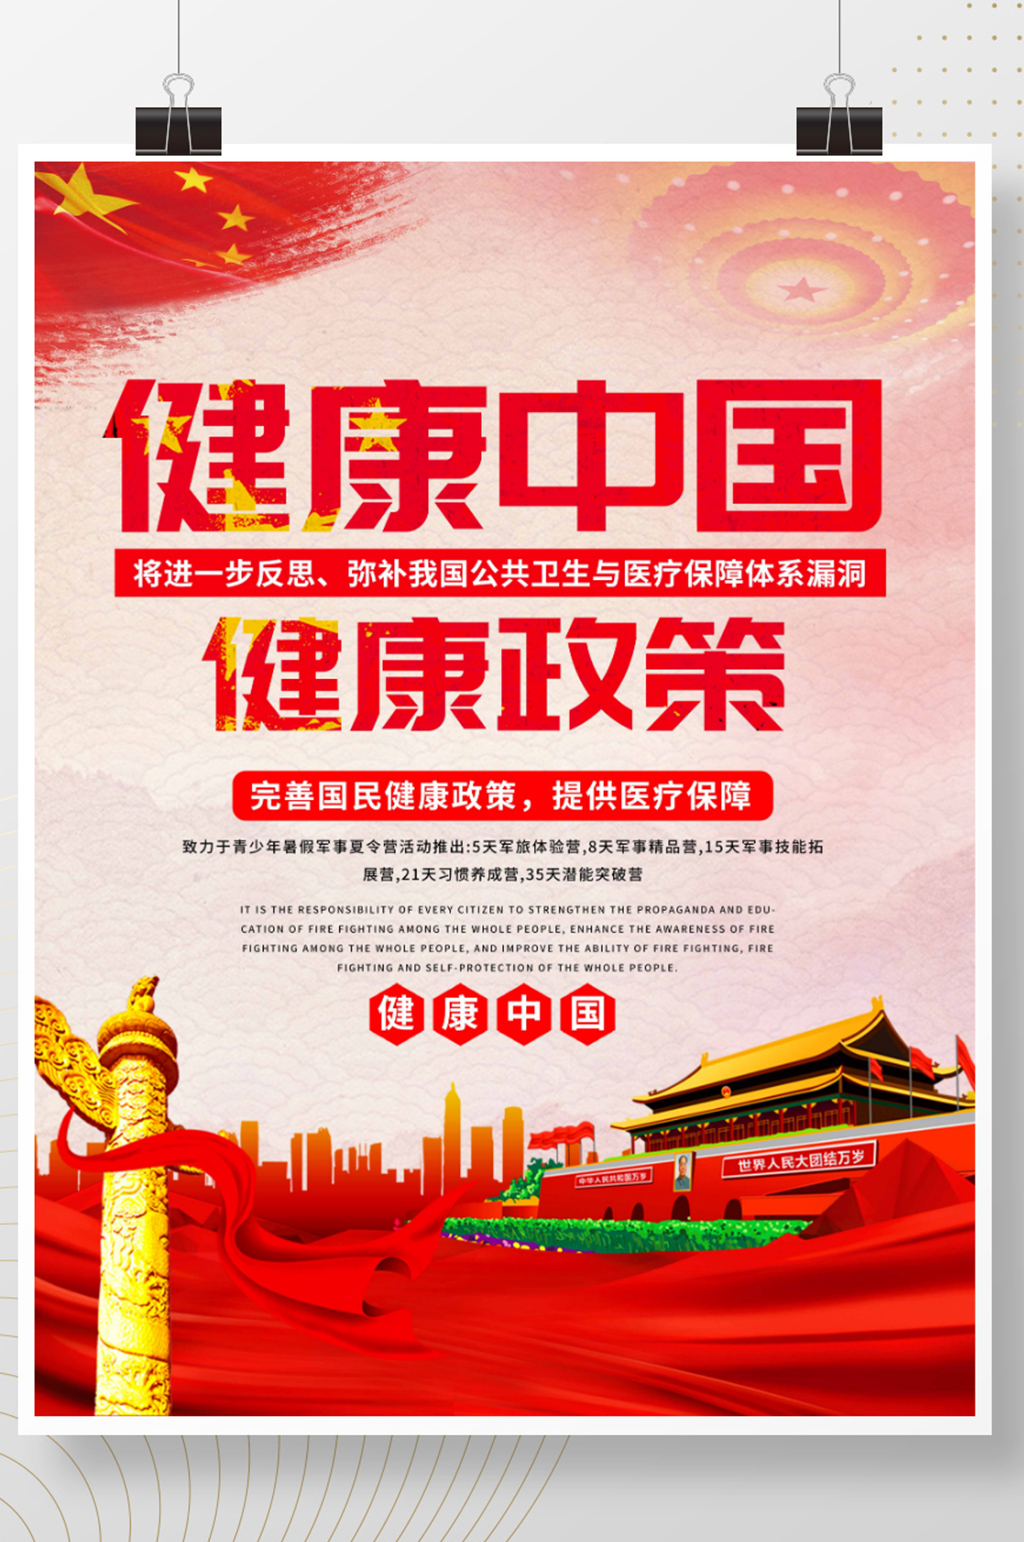 众图网独家提供红色大气健康中国健康服务展板海报素材免费下载,本